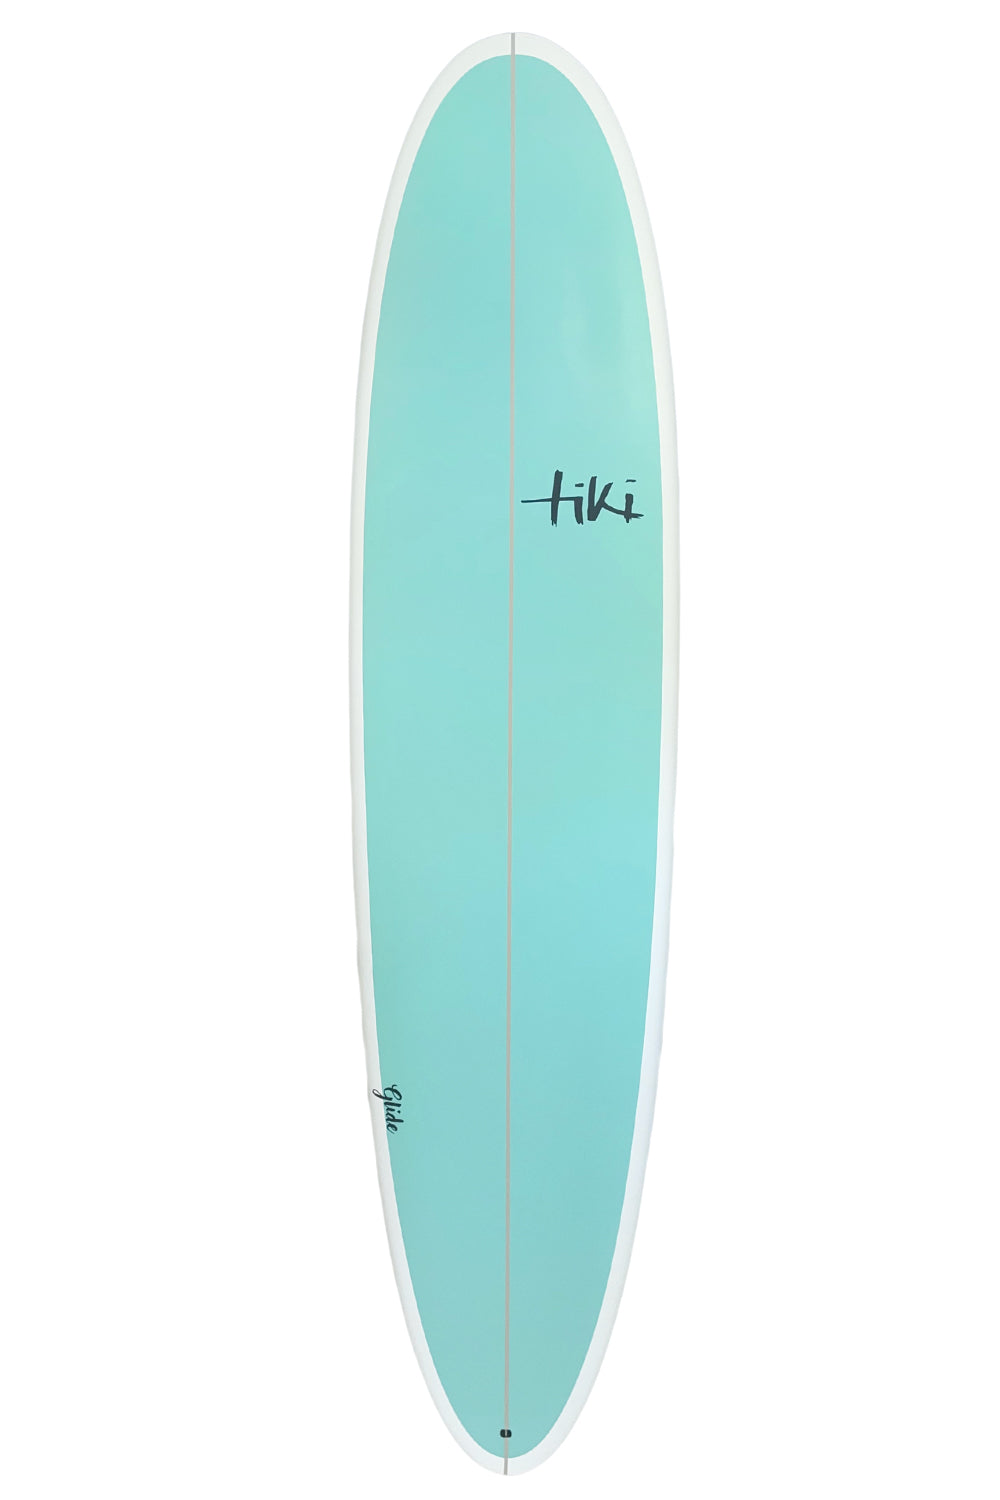 Tiki Evolution Glide Surfboard - Beach Glass Deck